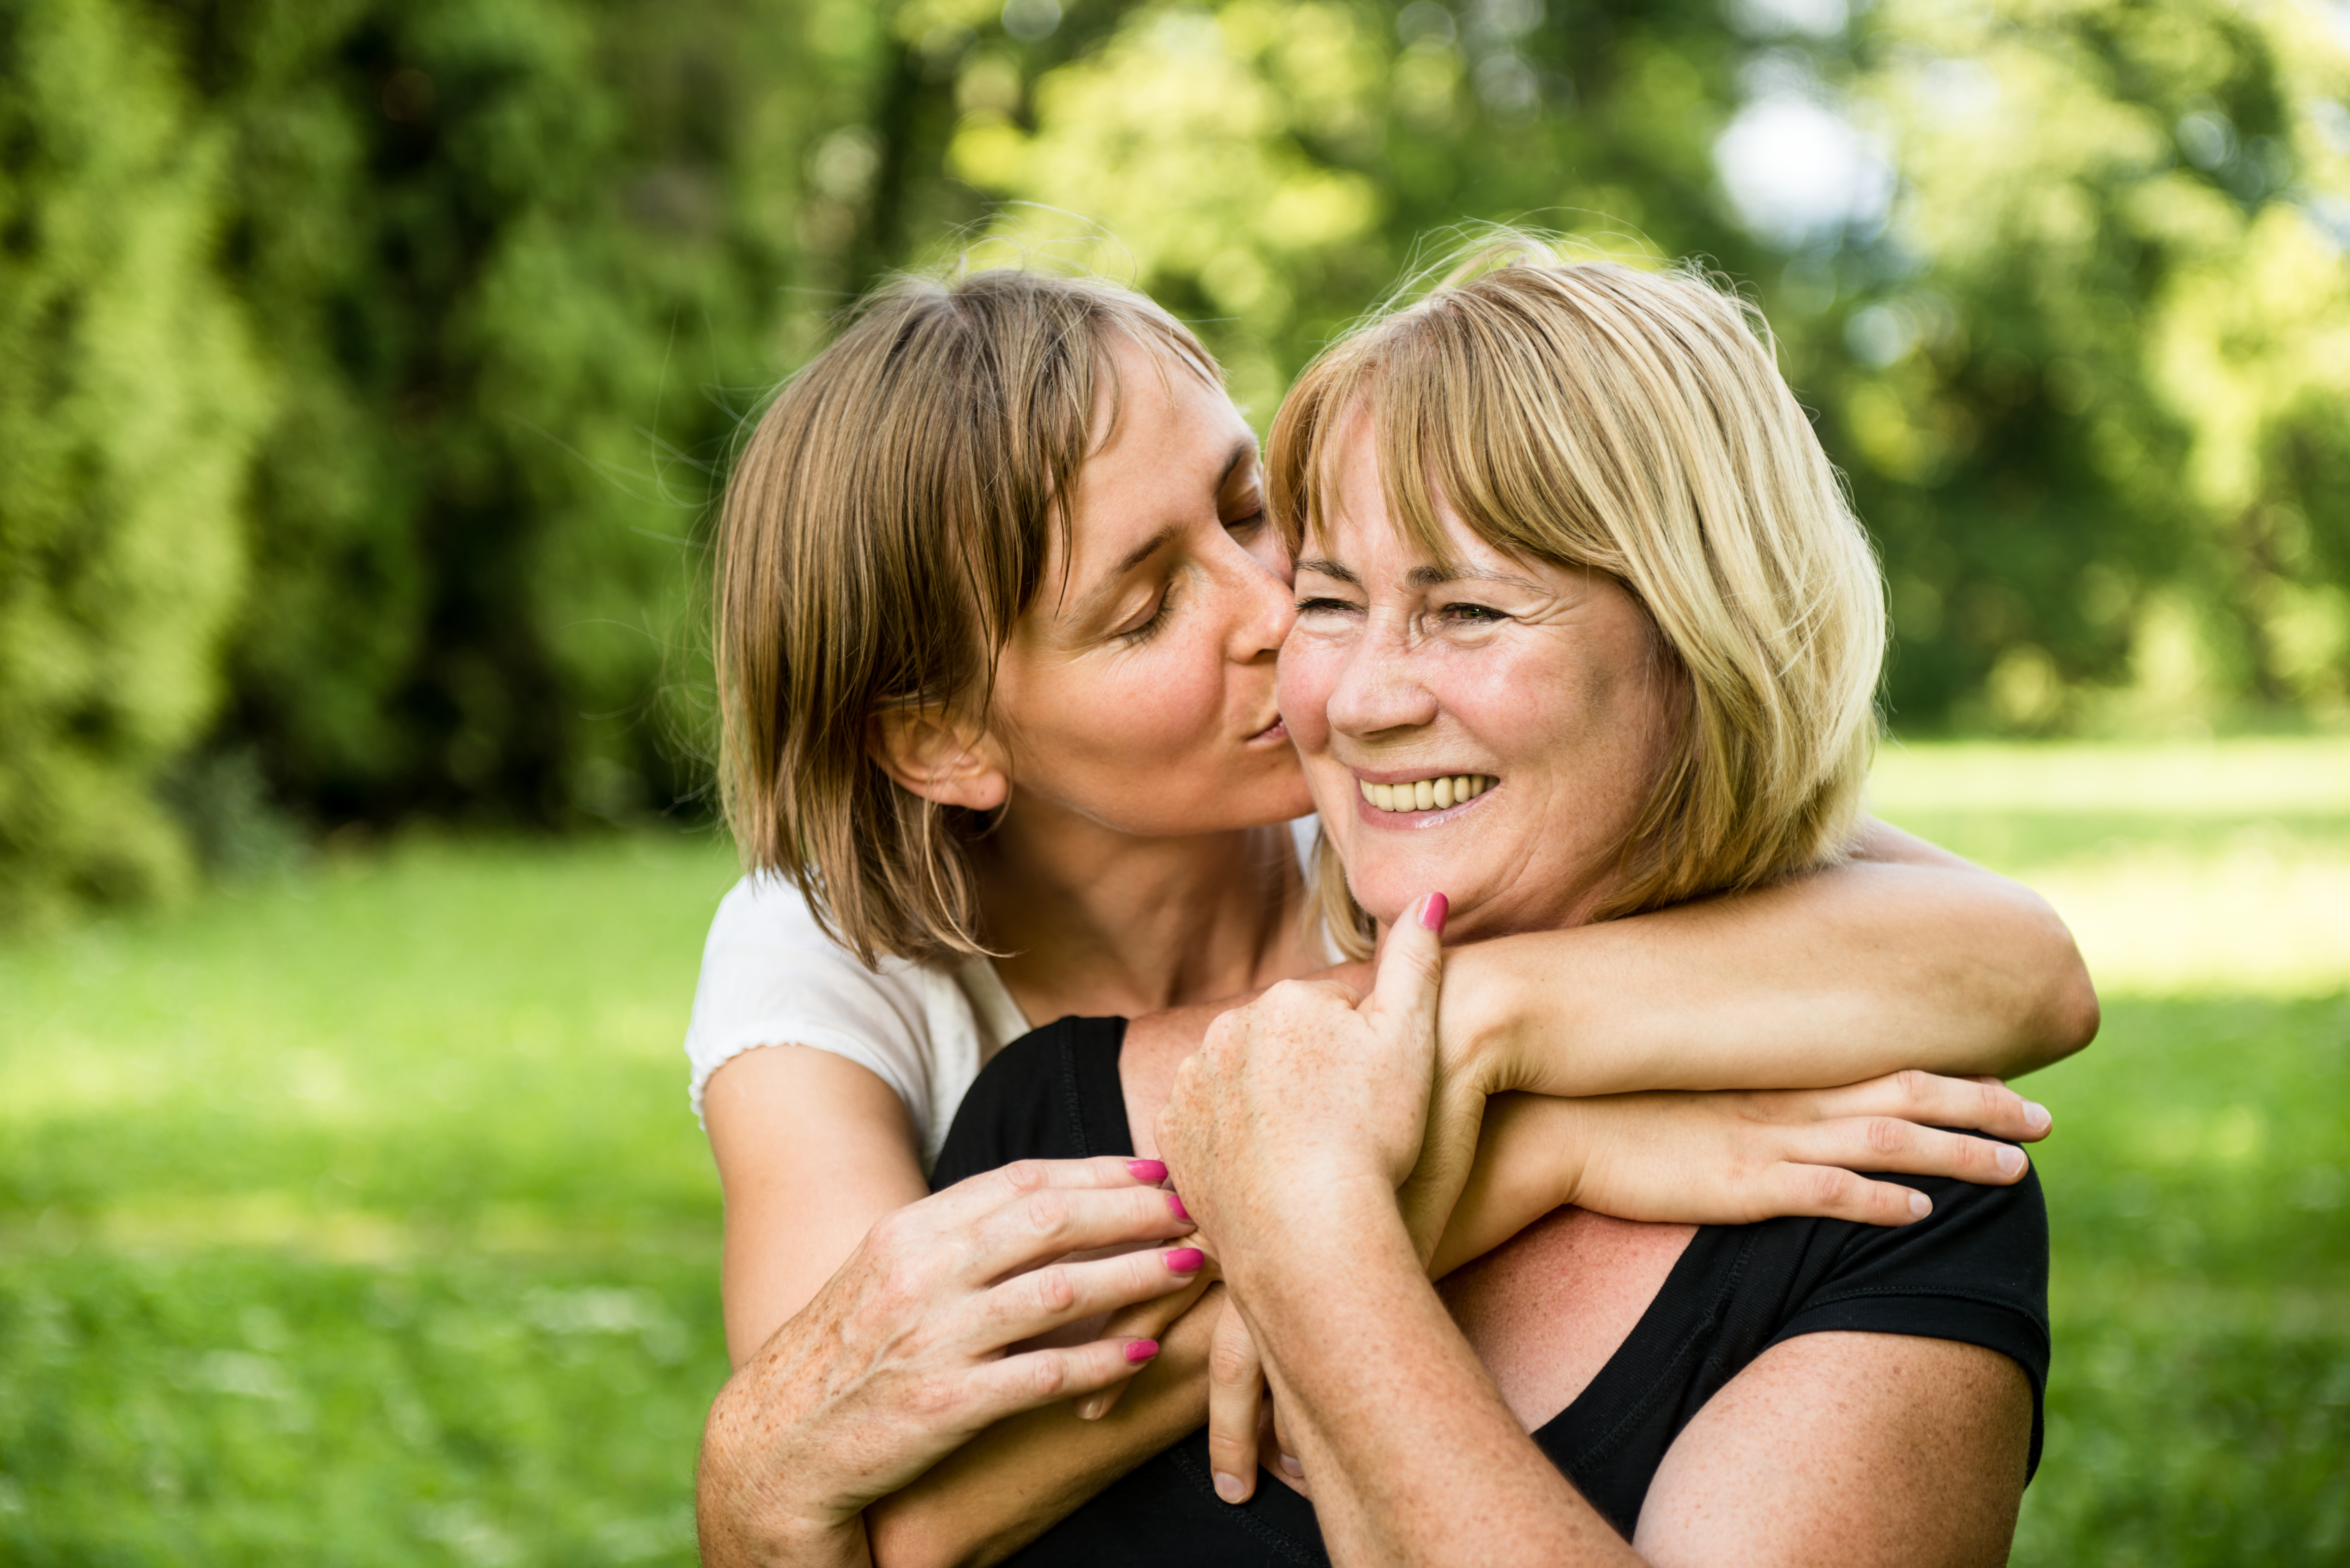 Madre e hija estrechando lazos | Fuente: Shutterstock